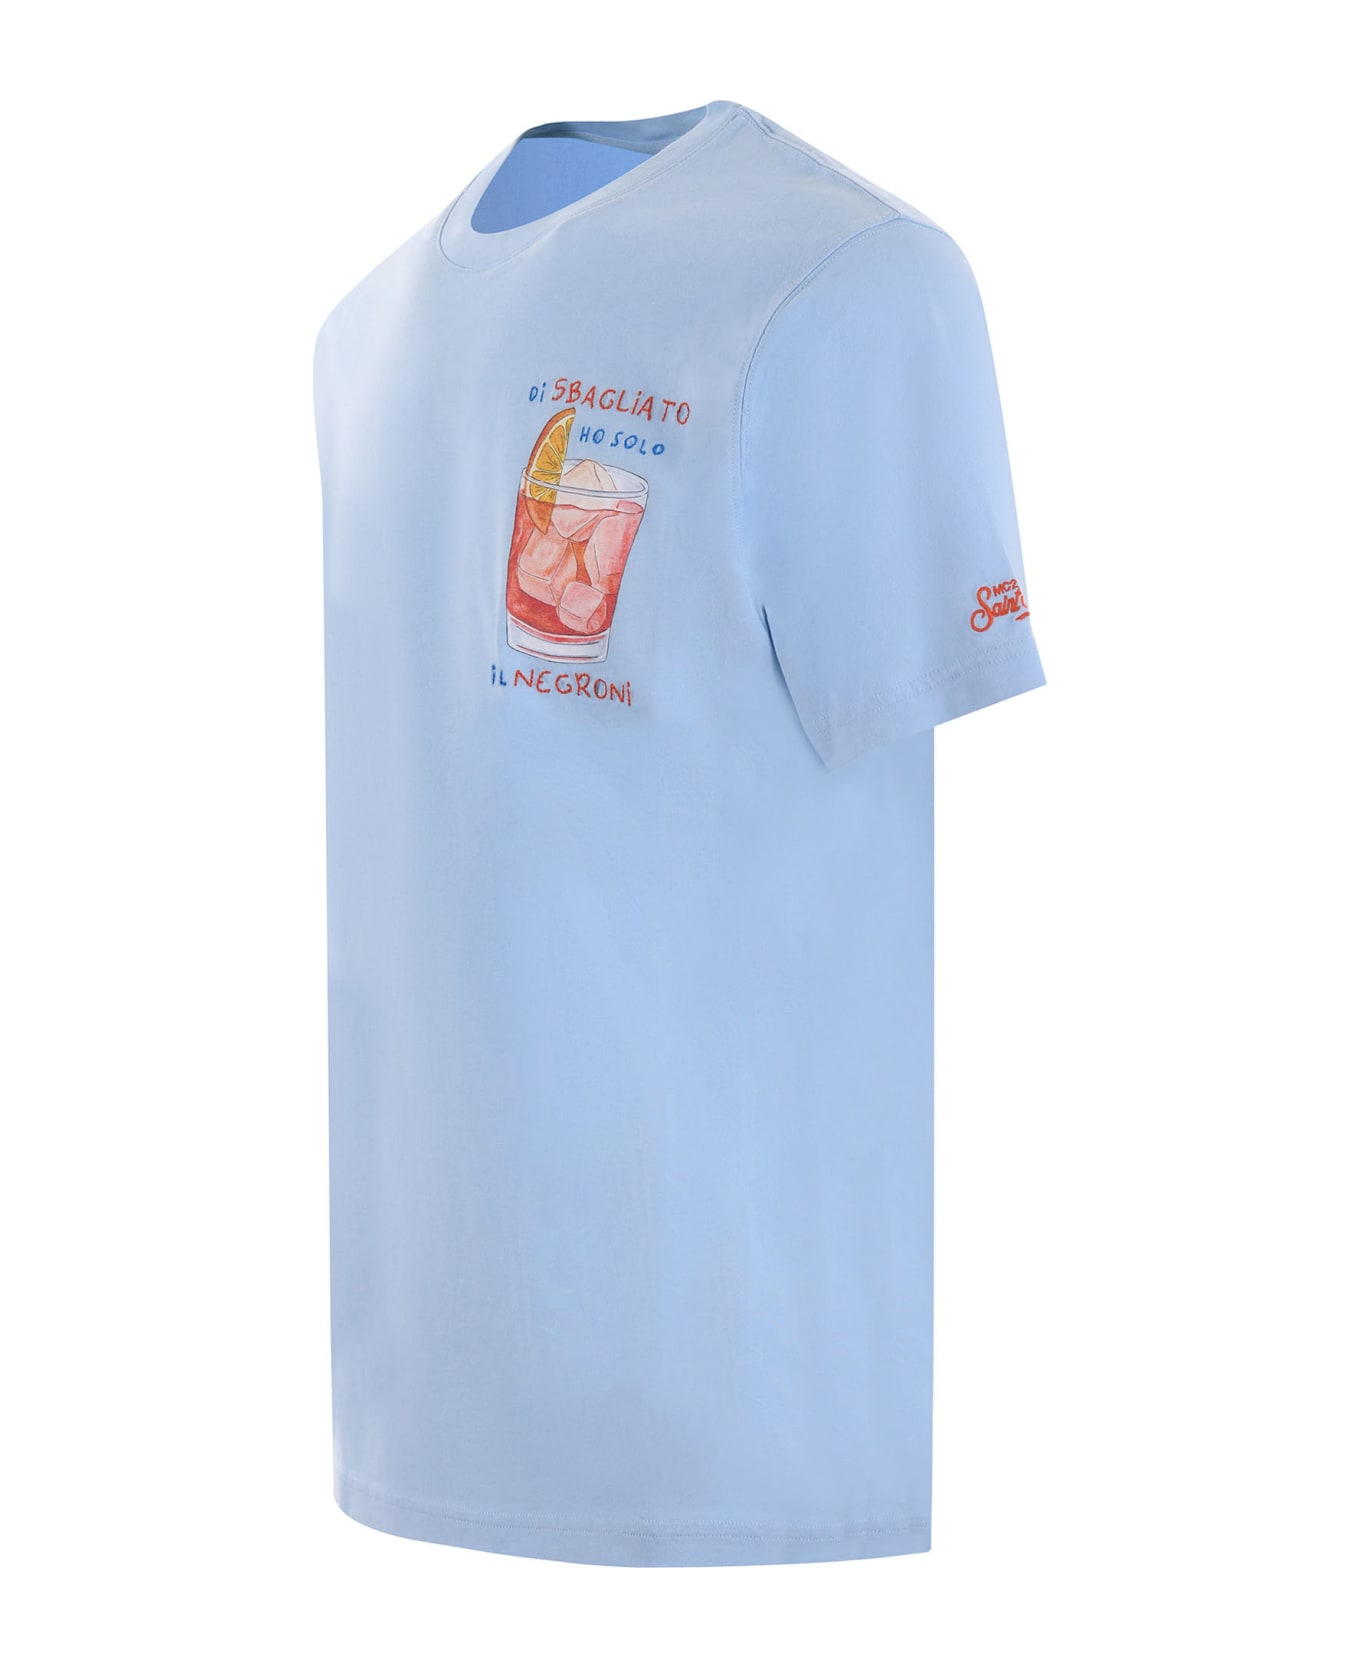 MC2 Saint Barth T-shirt Mc2 Saint Barth "di Sbagliato Ho Solo Il Negroni" In Cotone Disponibile Store Scafati - Celeste